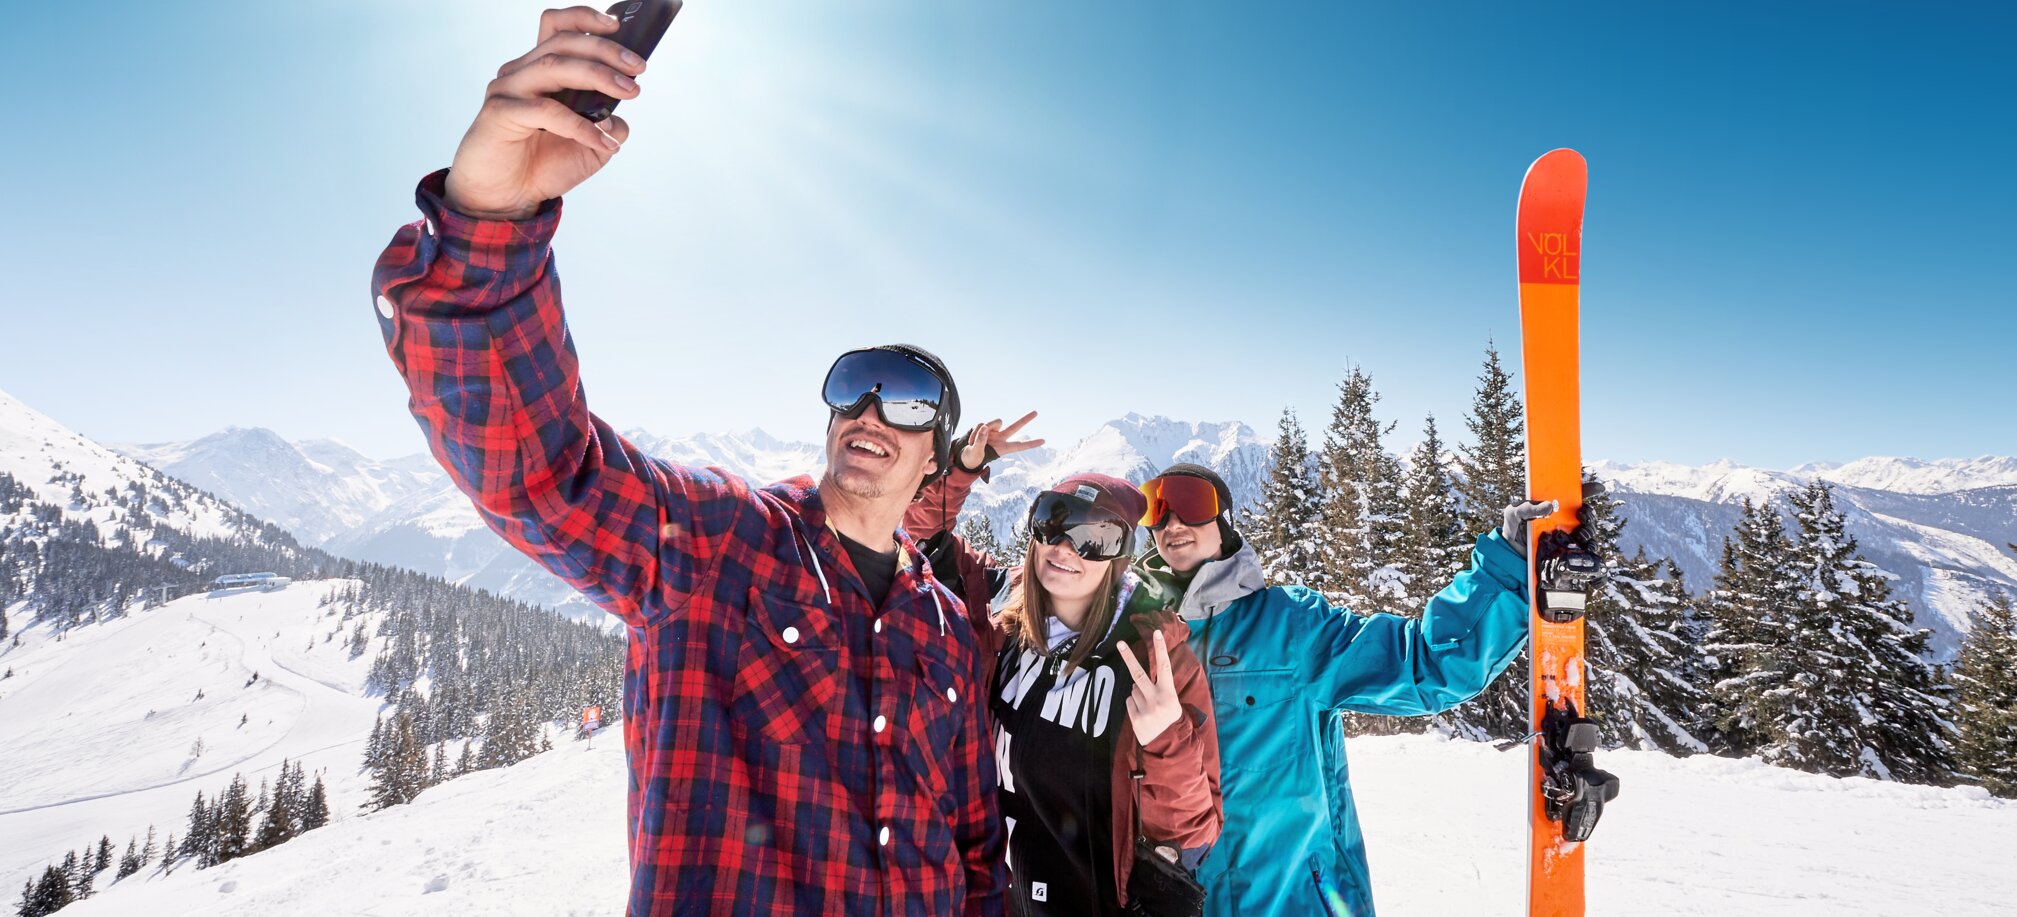 Drei Jugendliche mit Skibrillen machen ein Selfie auf dem schneebedeckten Berg und der Hinterste hält einen orangenen Ski